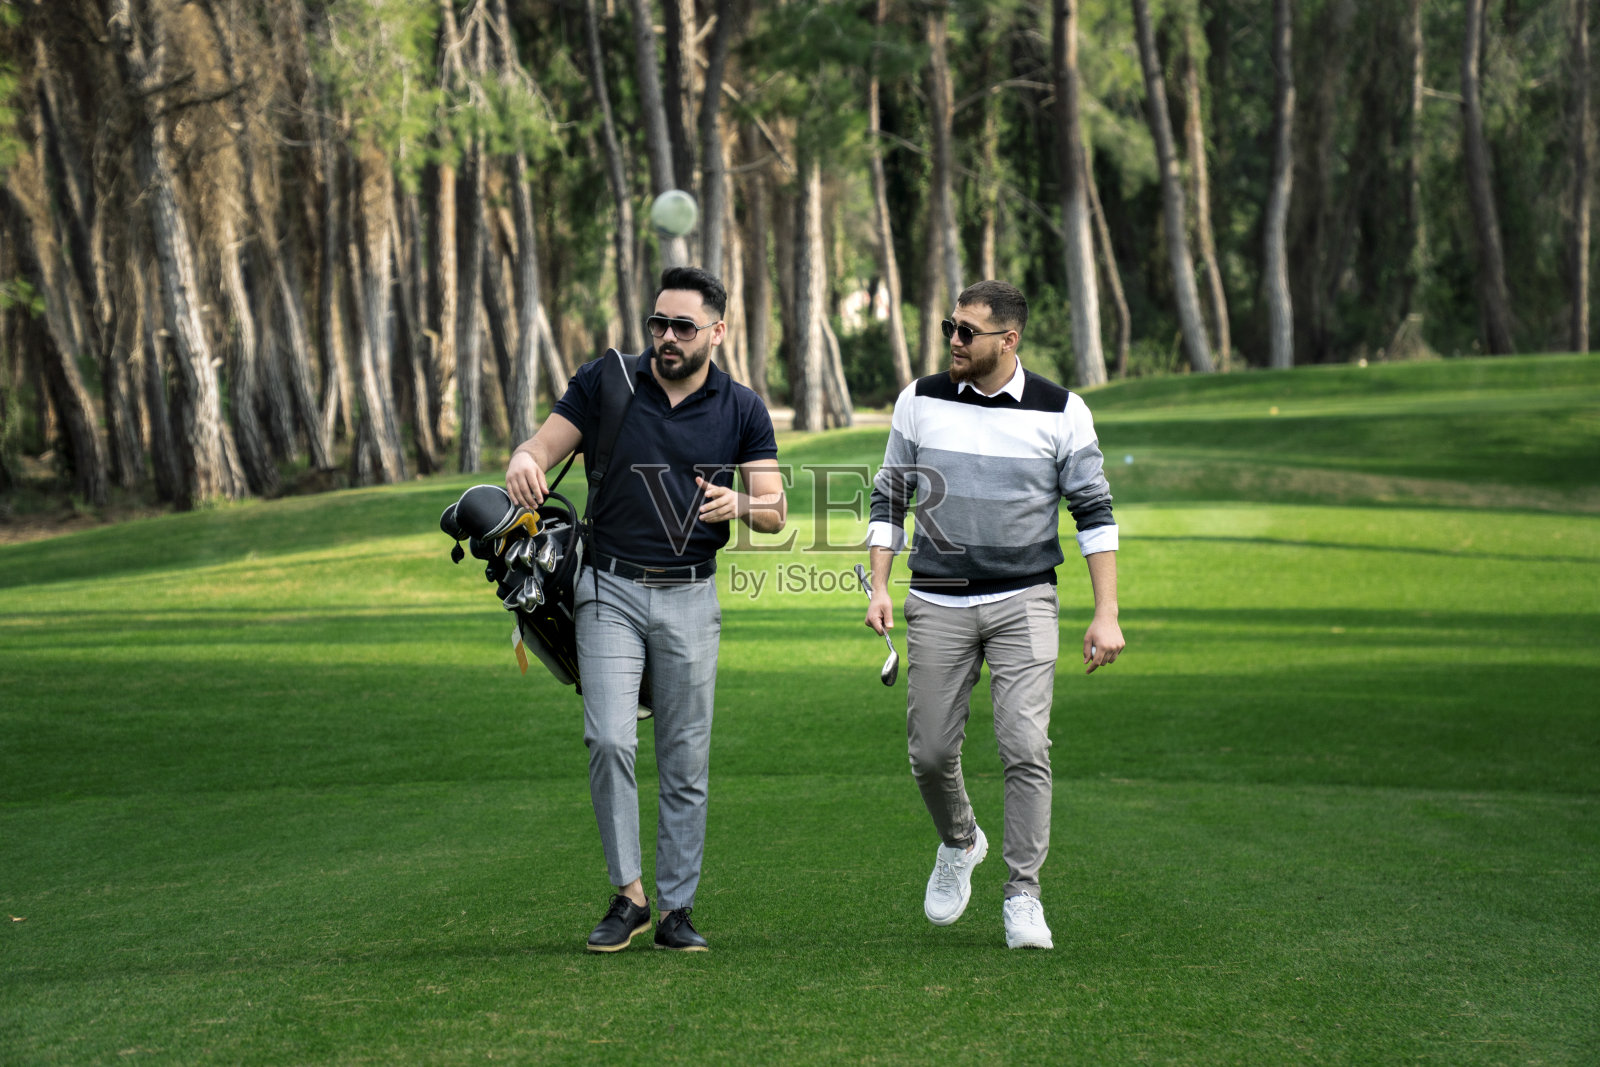 这是两名男性高尔夫球手在高尔夫球场中背着高尔夫球袋沿着球道行走的照片照片摄影图片